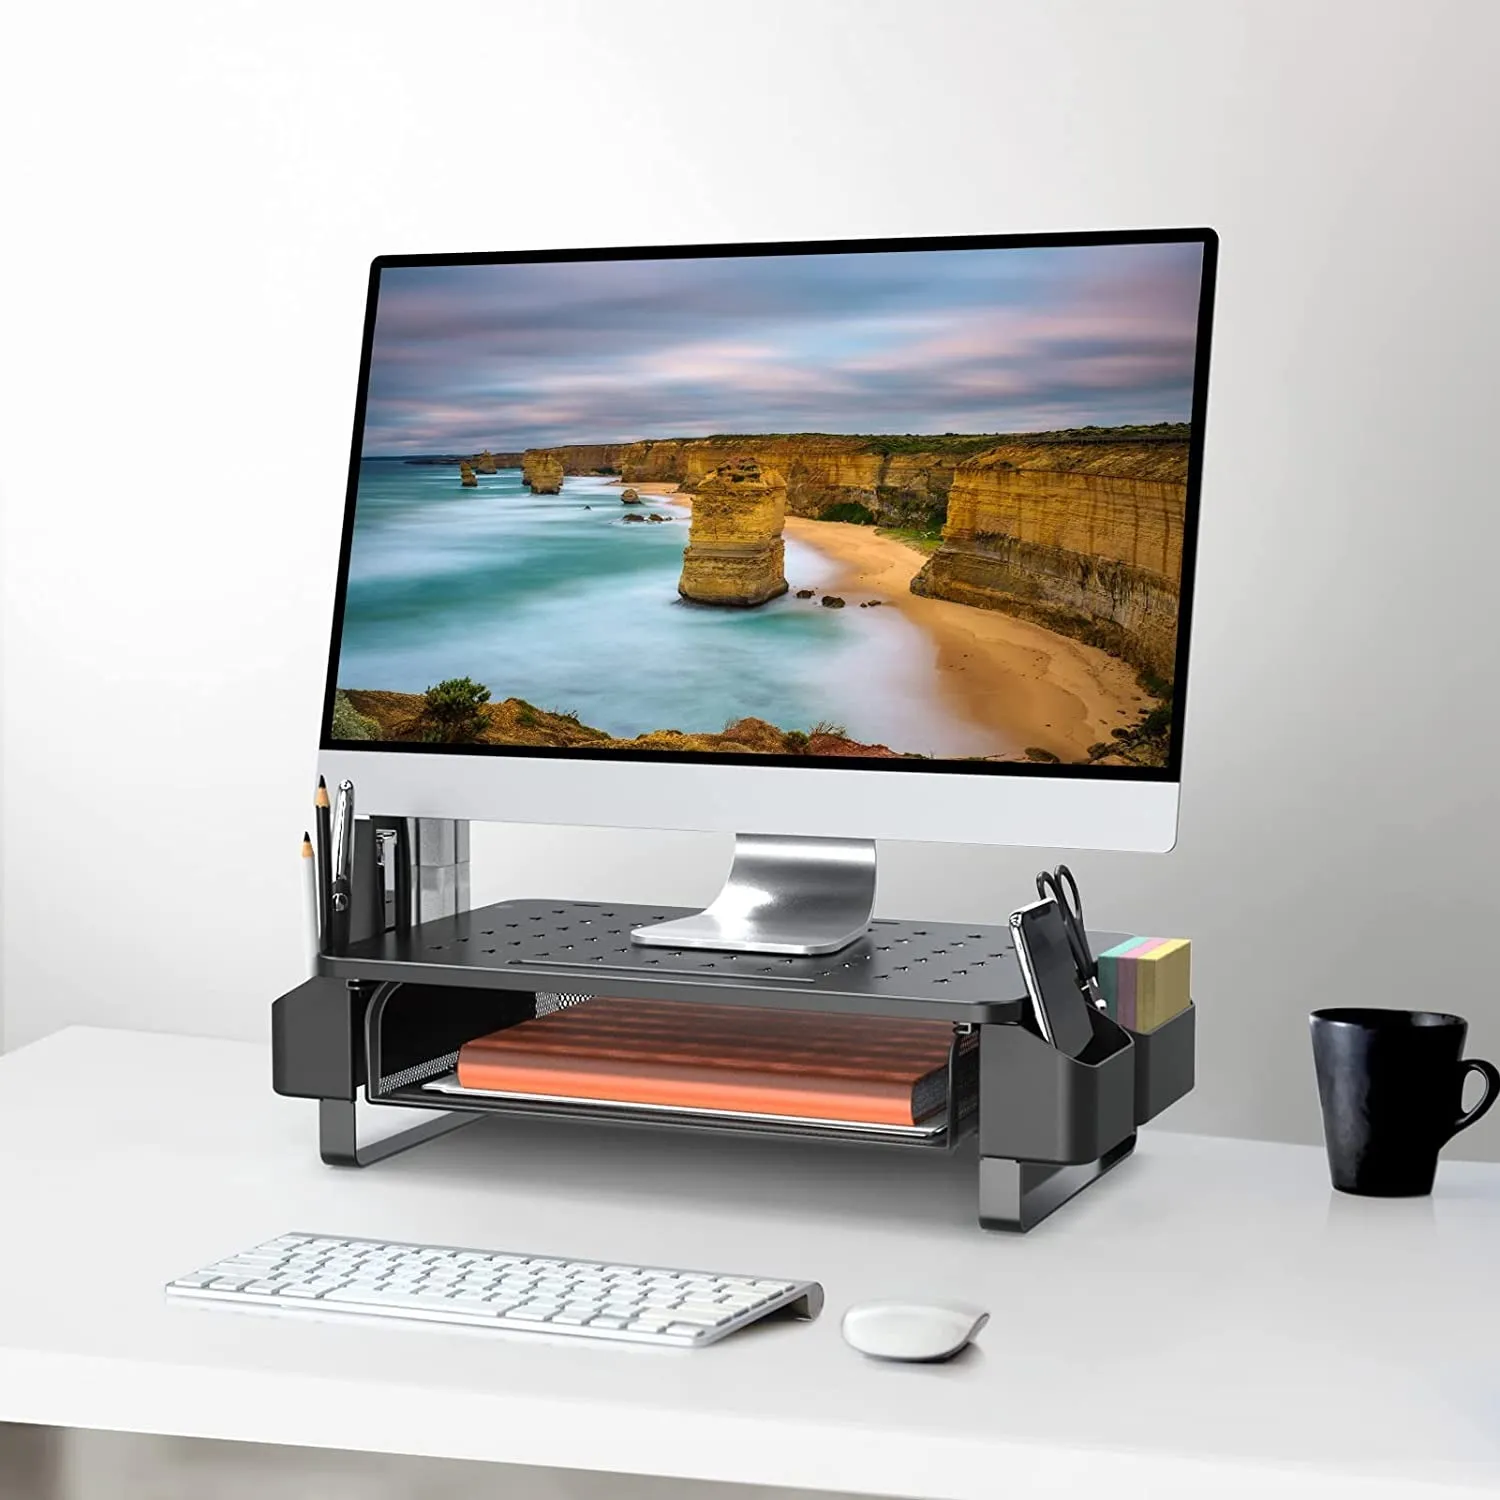 Support écran avec tiroir - Pour votre ordinateur de bureau